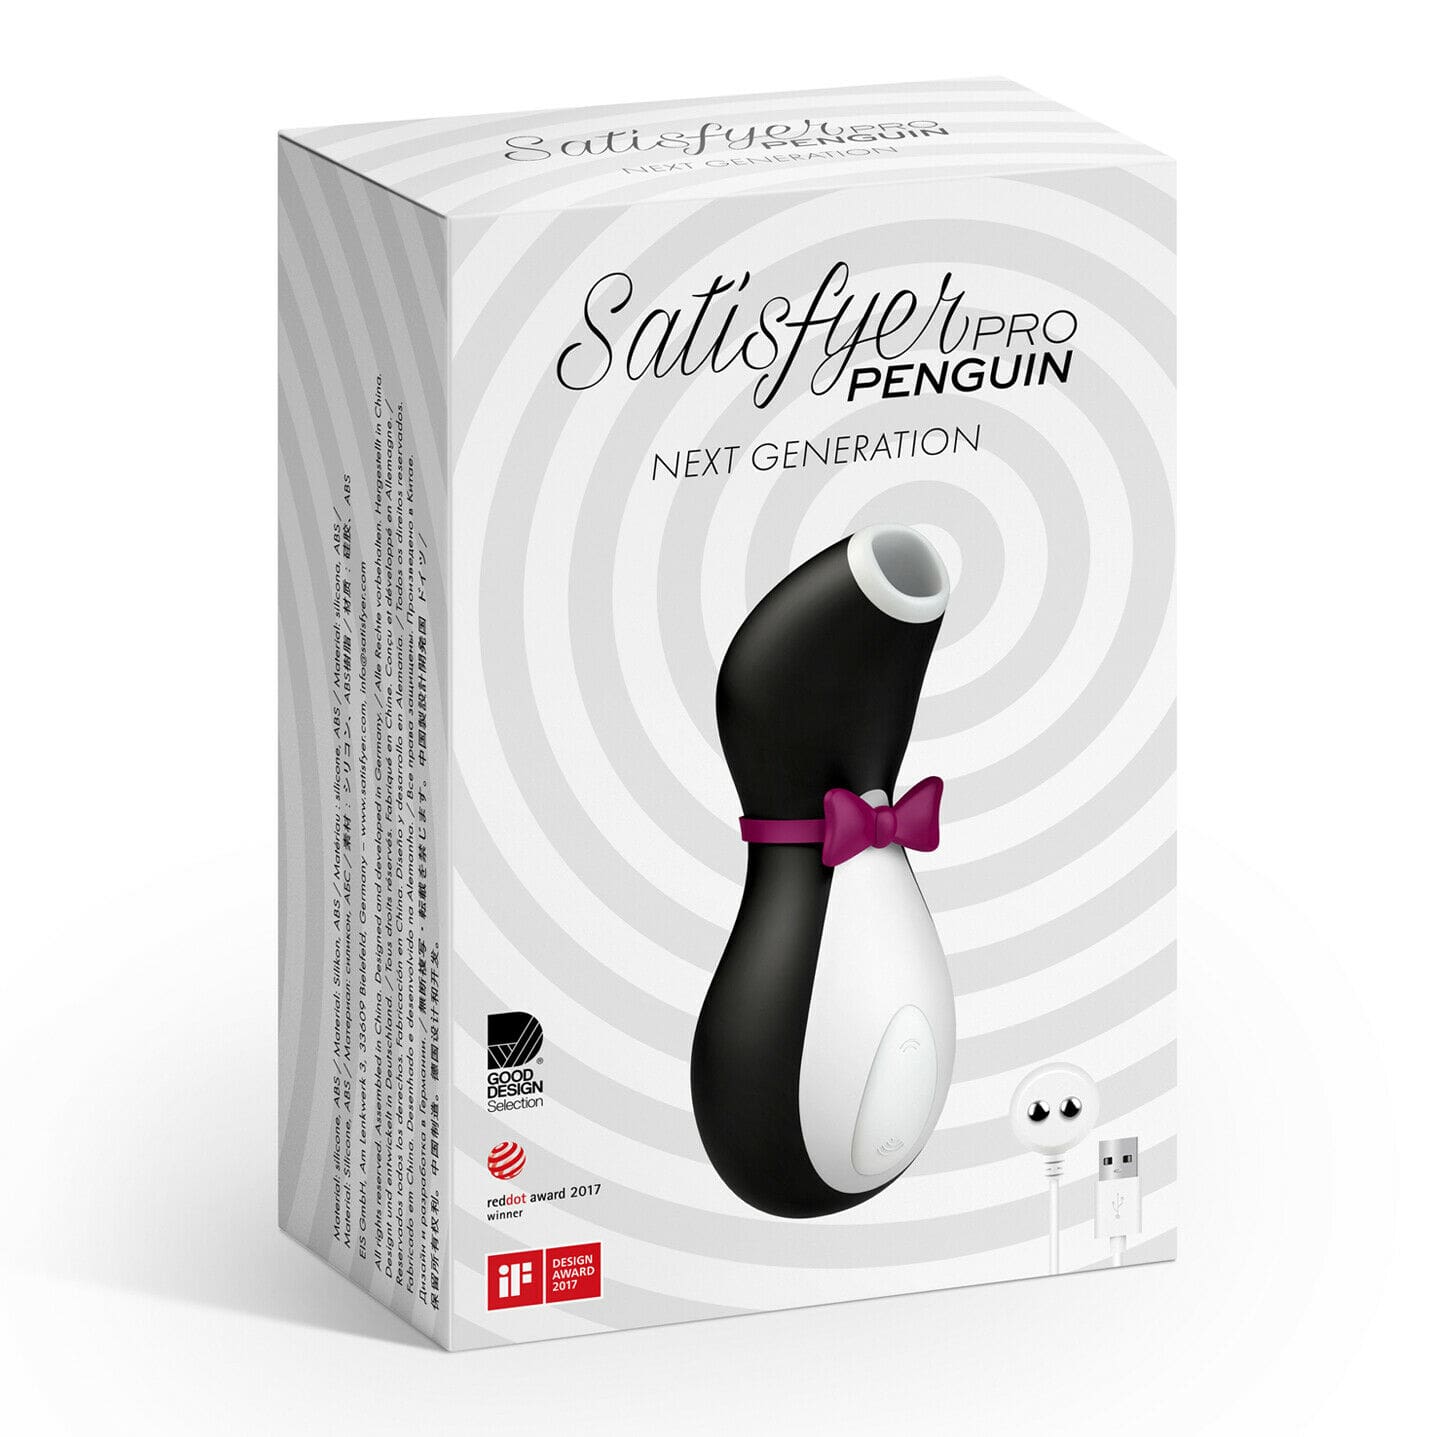 Satisfyer Pro Penguin Clitoral Massager package